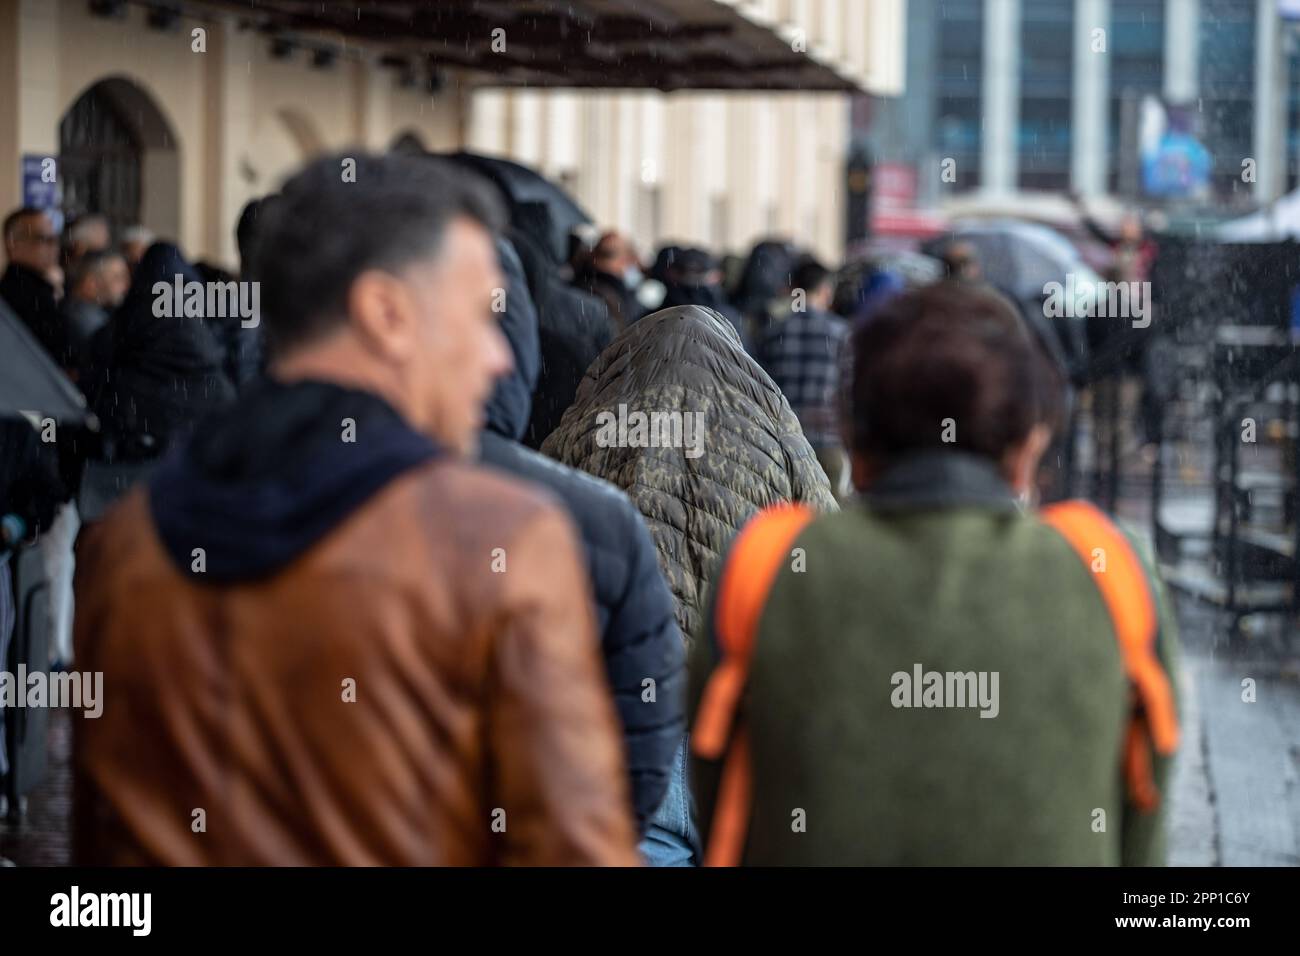 Pendant la pluie torrentielle d'Istanbul, parmi les passagers marchant sur le quai des lignes de Kadikoy, on a vu qu'un homme couvrait sa tête avec son manteau et qu'il était protégé de la pluie. Banque D'Images